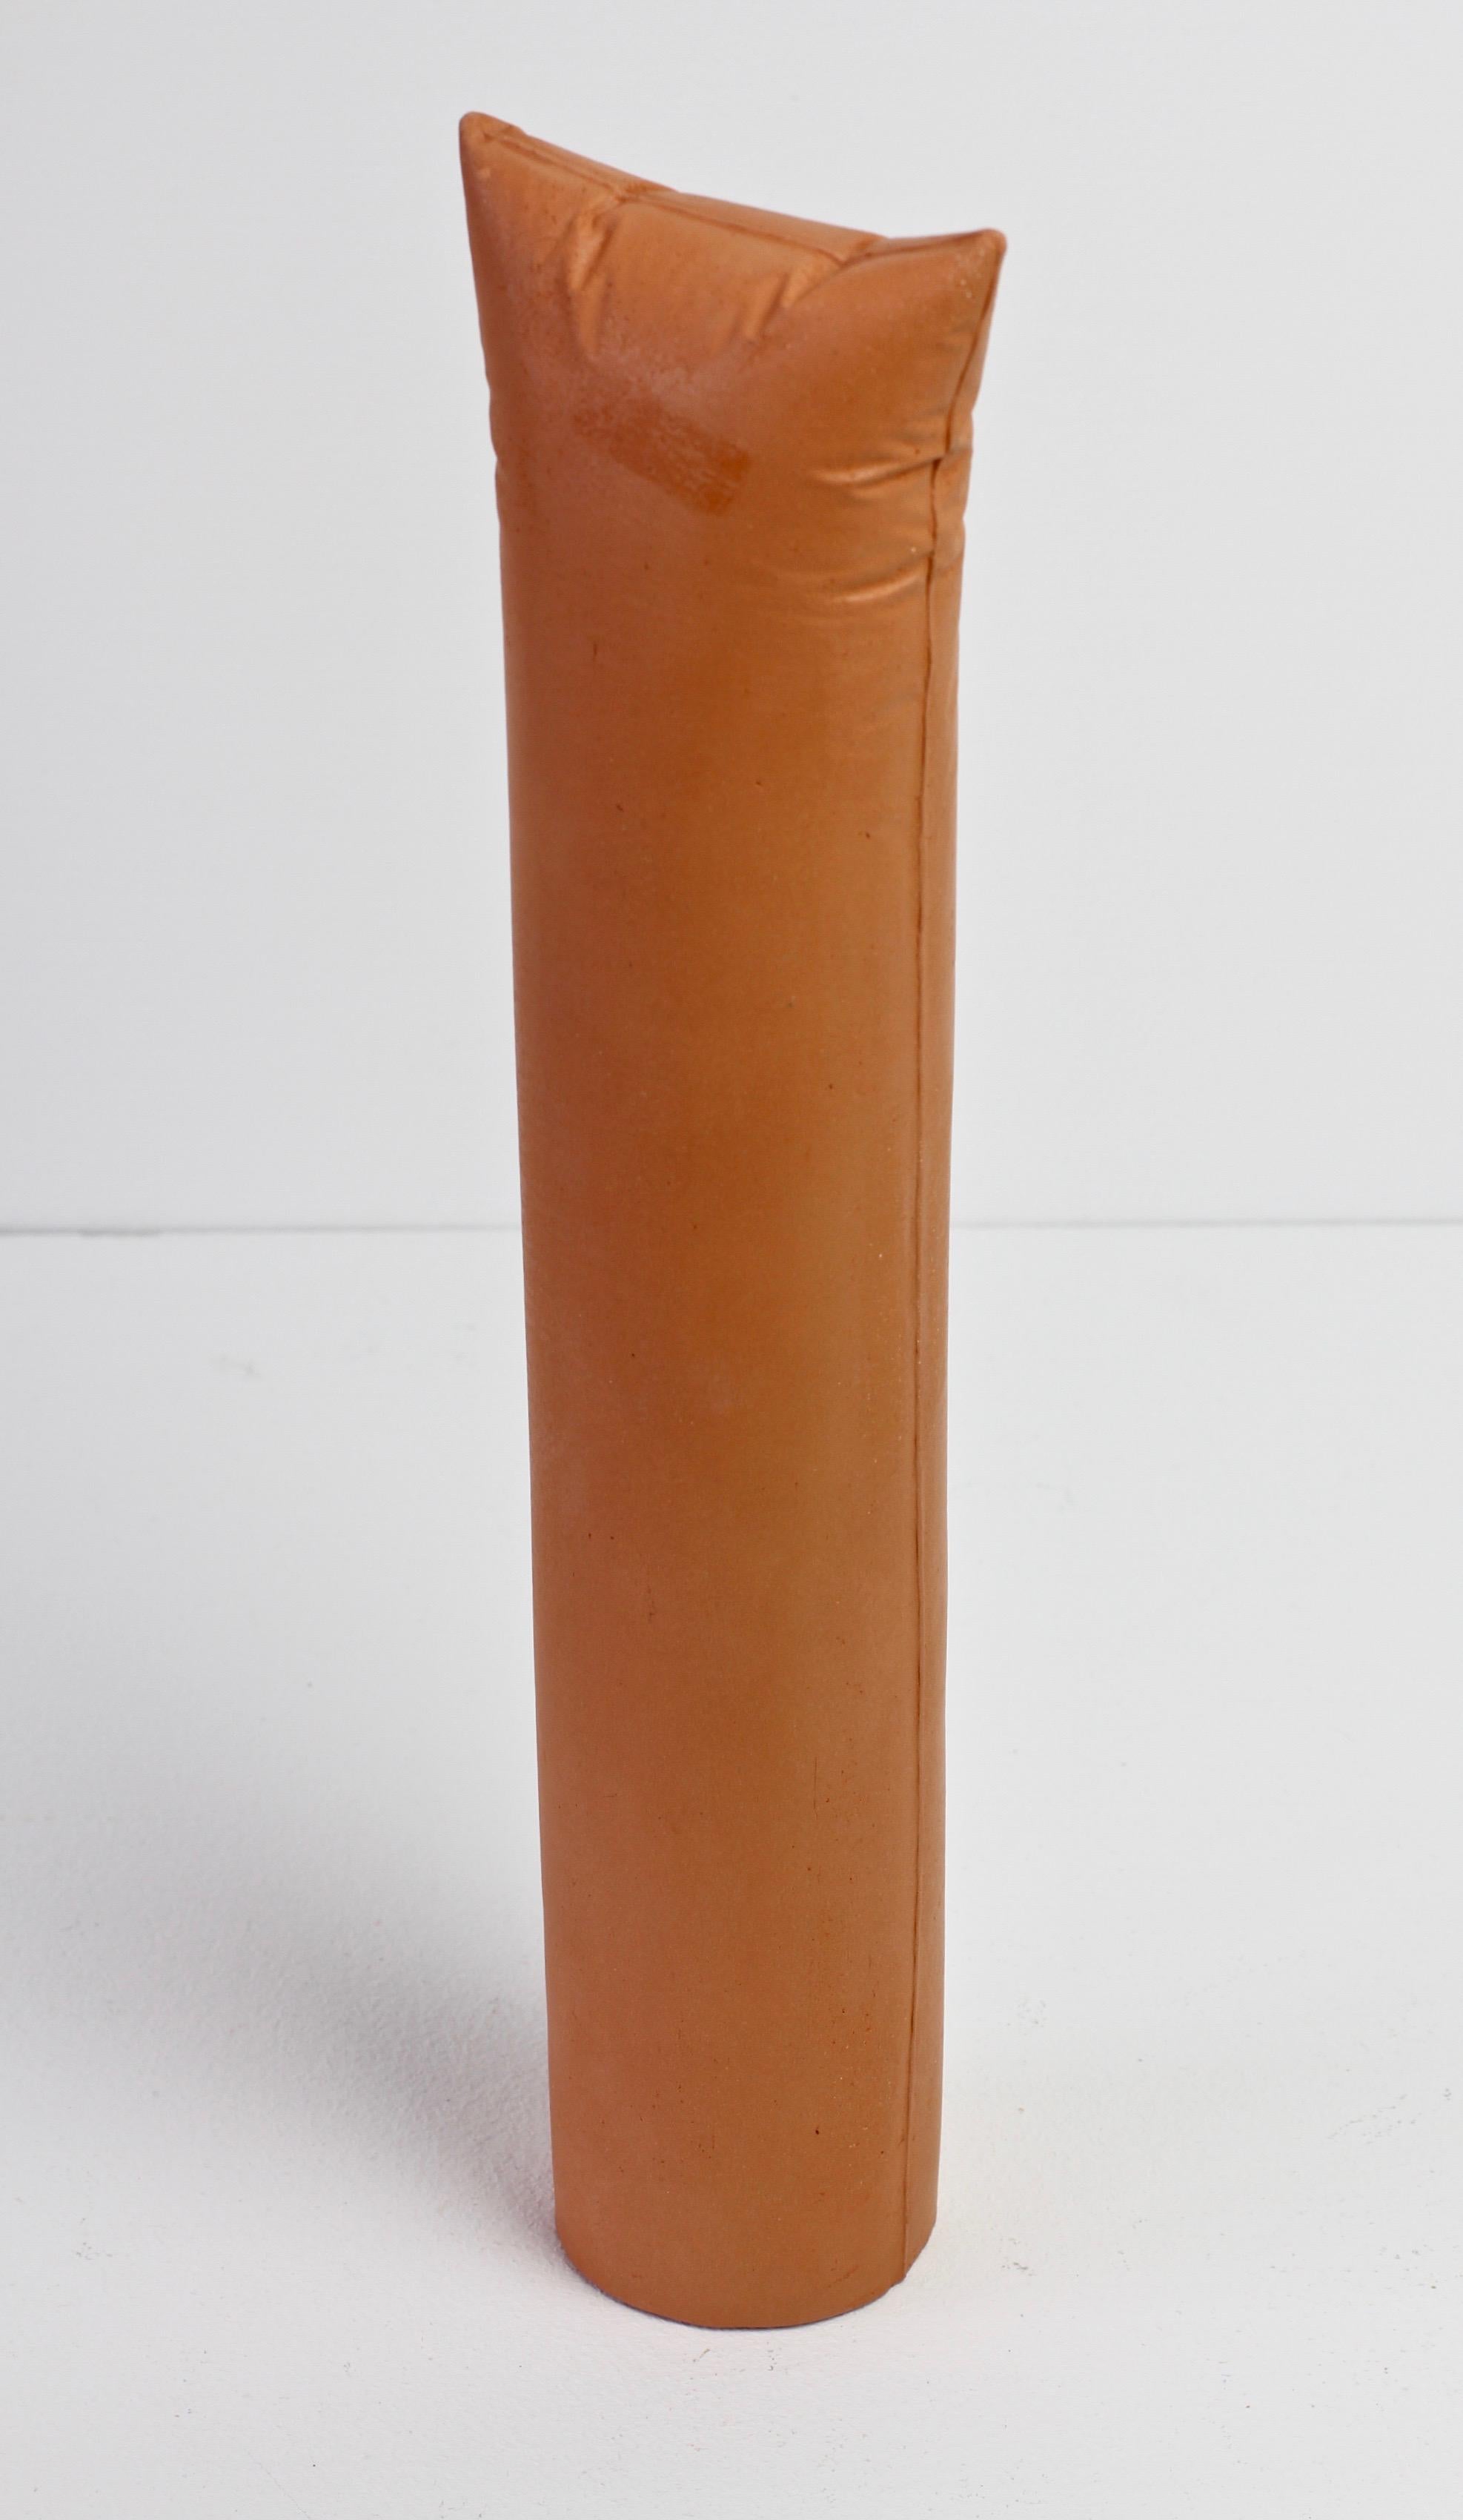 Ceramic Gabriele Puetz Pillow Pillar 'Nichts' Vintage German Art Pottery Sculpture # 5/7 For Sale